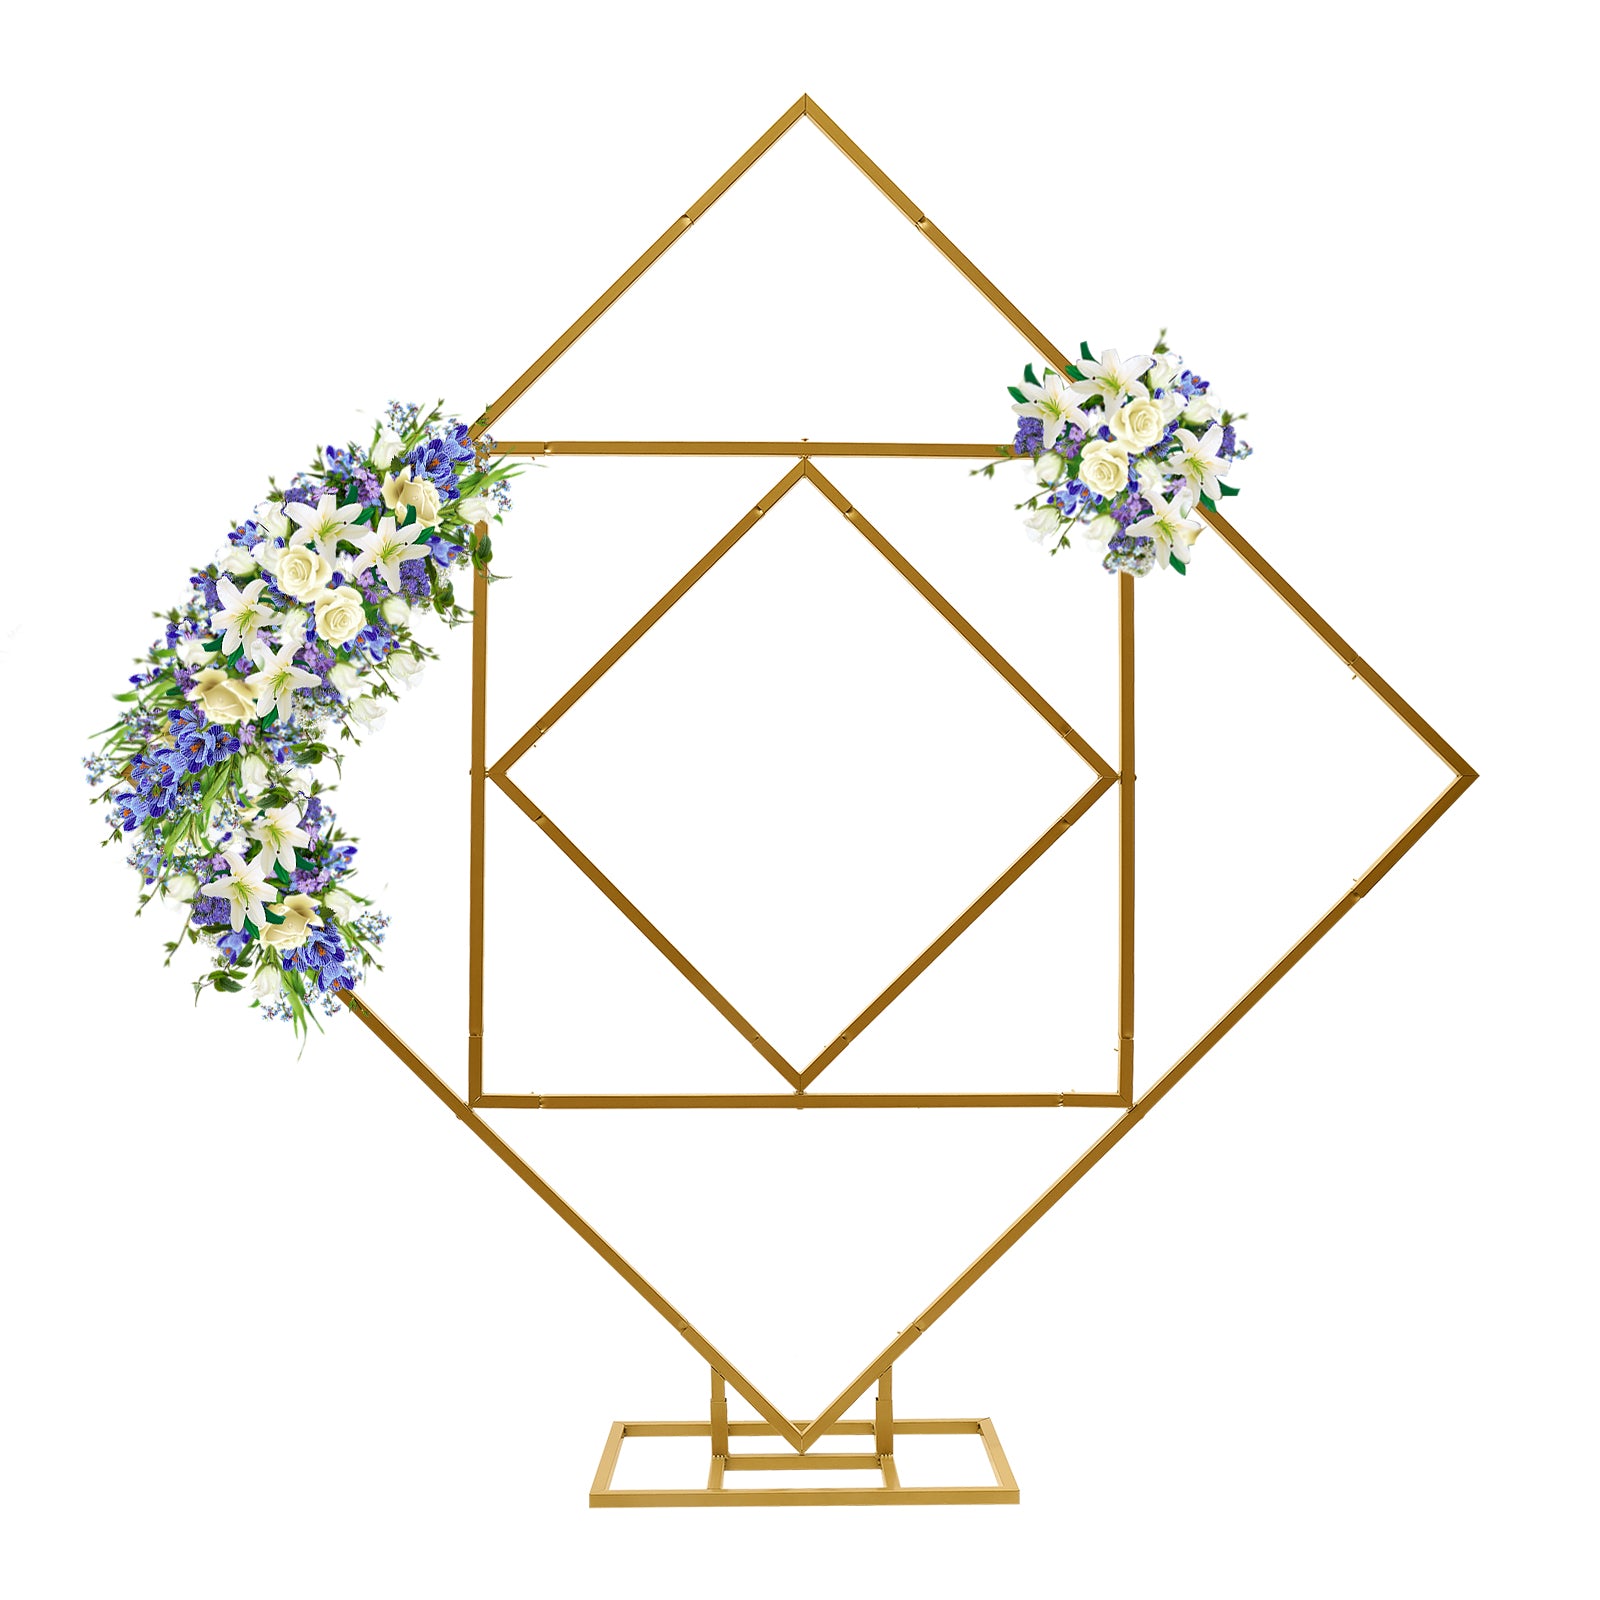 Arco in metallo per palloncini con piede,Fiocco per matrimonio, in metallo,base grande,200 cm,per feste, eventi (oro)